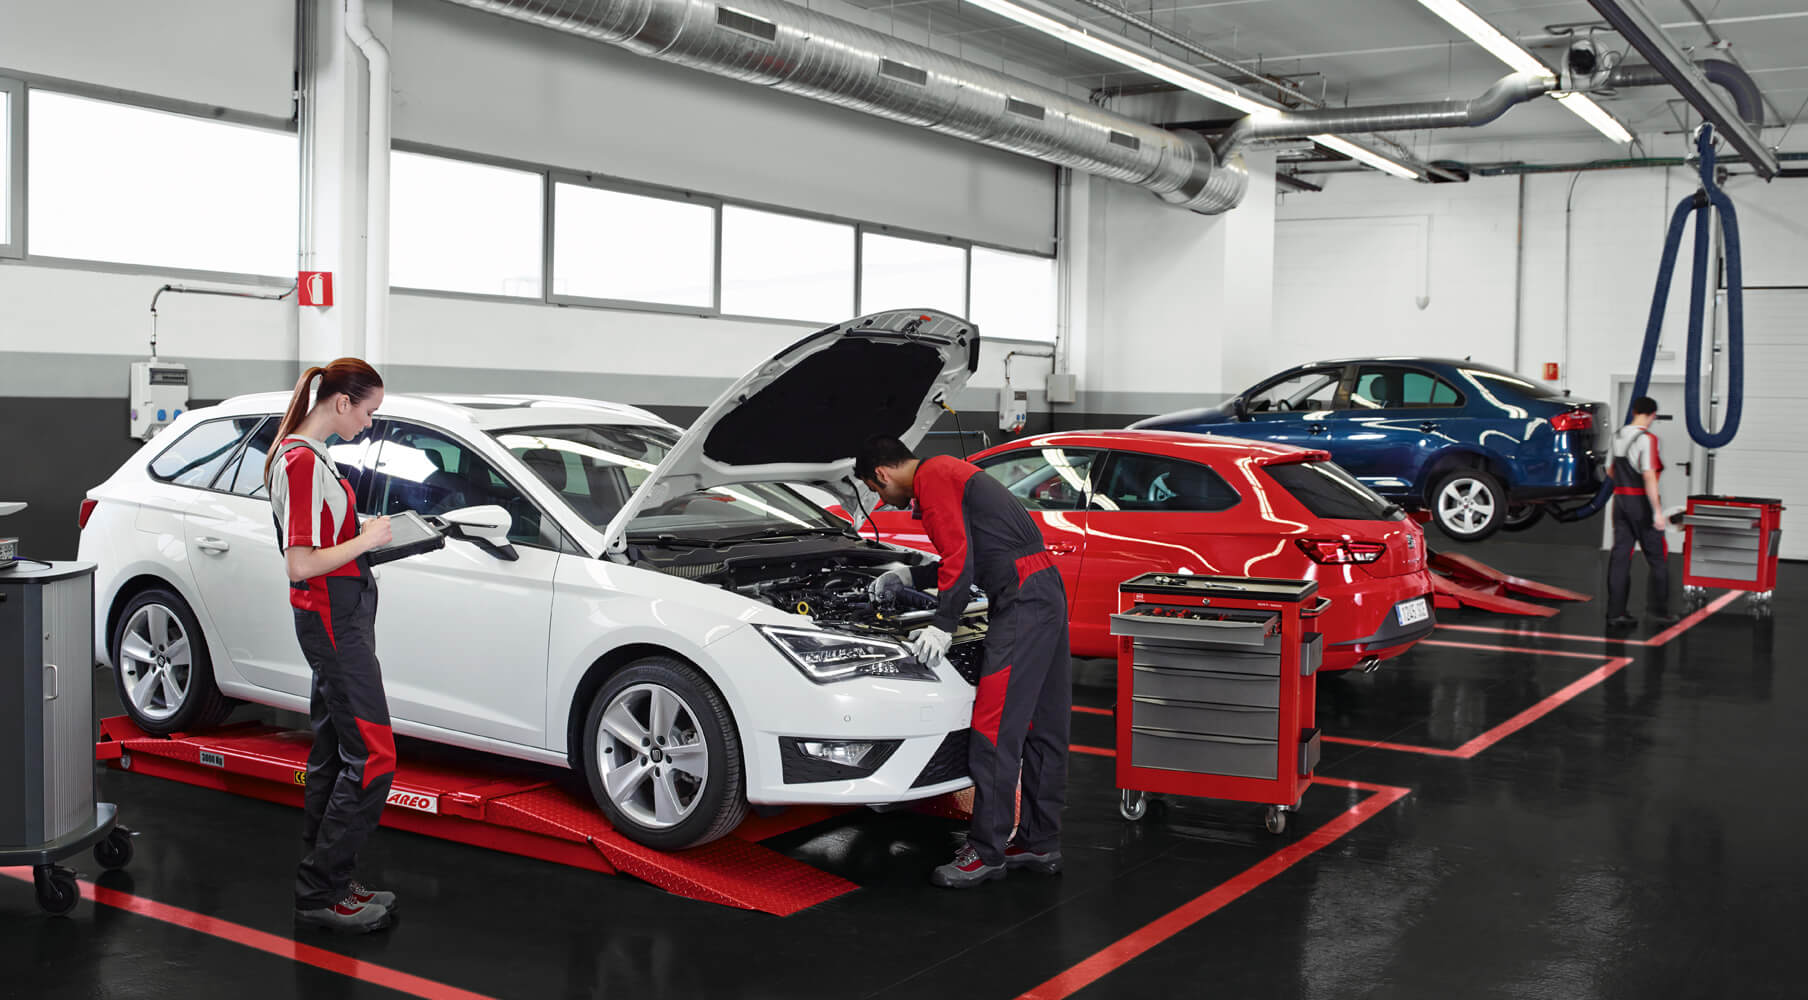 Mantenimiento y servicio de tu coche – Mecánicos de SEAT revisando un coche en un taller